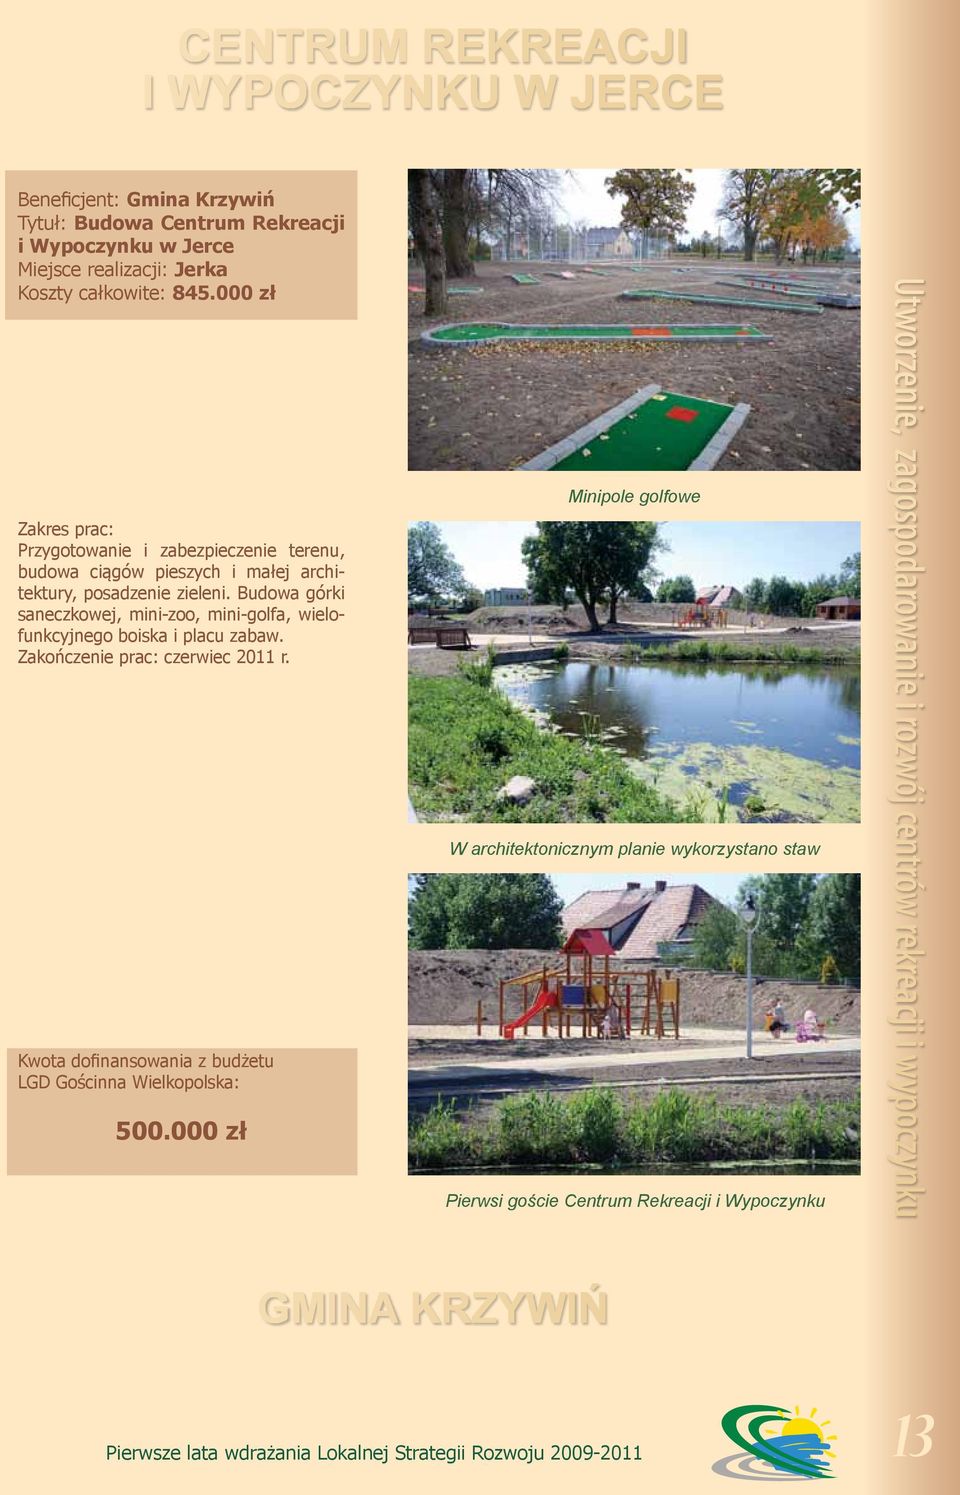 Budowa górki saneczkowej, mini-zoo, mini-golfa, wielofunkcyjnego boiska i placu zabaw. Zakończenie prac: czerwiec 2011 r.